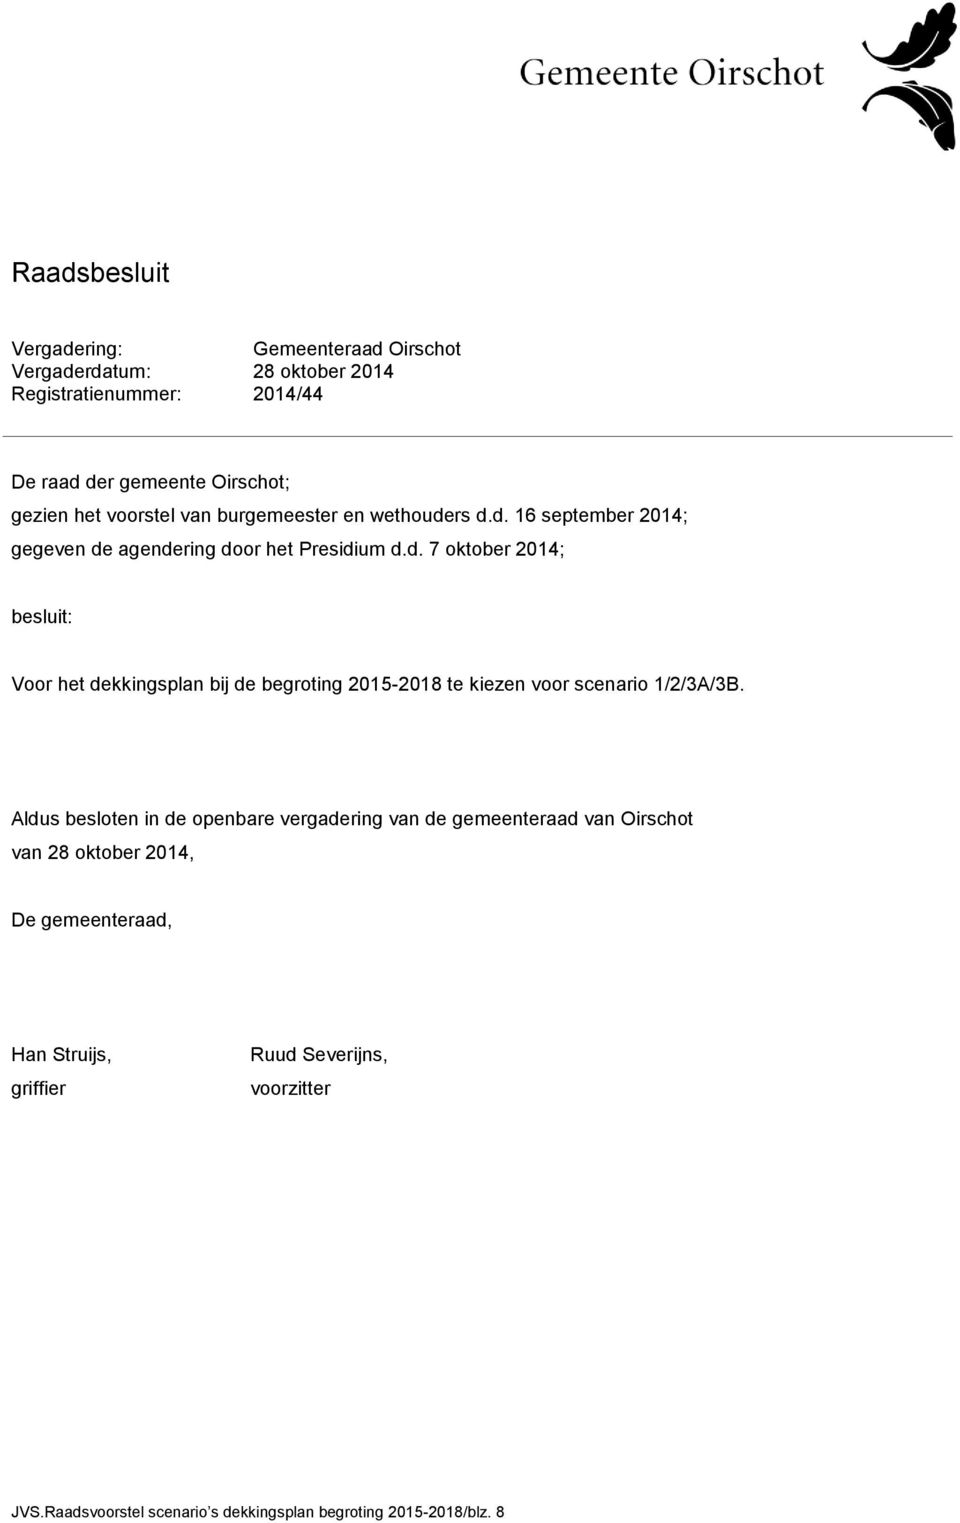 Aldus besloten in de openbare vergadering van de gemeenteraad van Oirschot van 28 oktober 2014, De gemeenteraad, Han Struijs, griffier Ruud